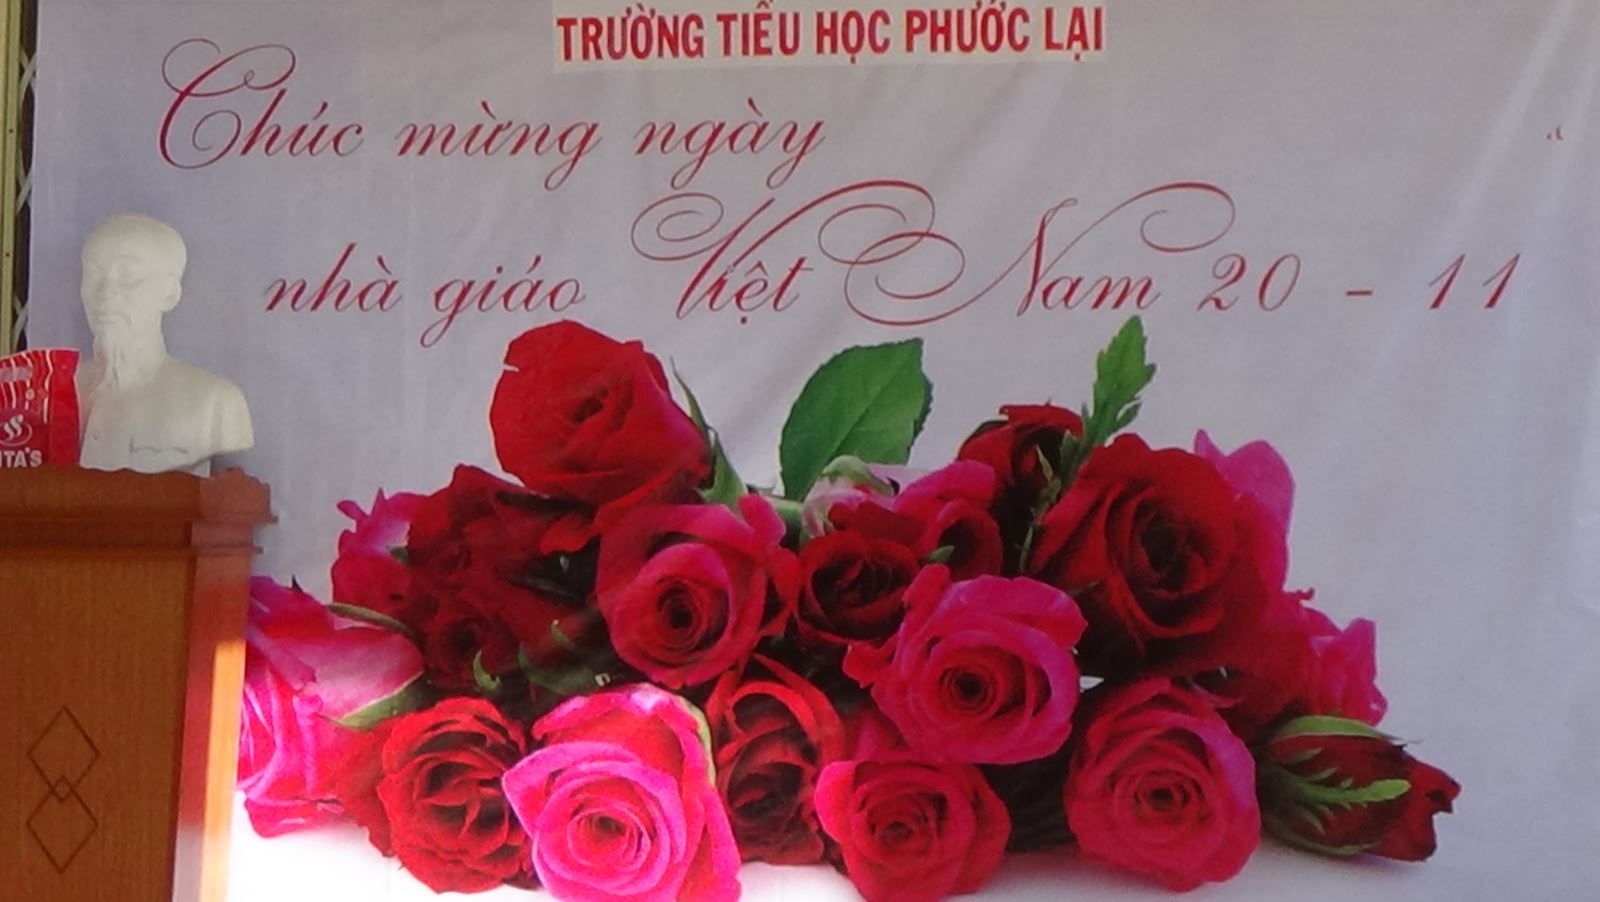 Lễ kỷ niệm 36 năm ngày Nhà giáo Việt Nam 20-11 tại Trường tiểu học Phước Lại